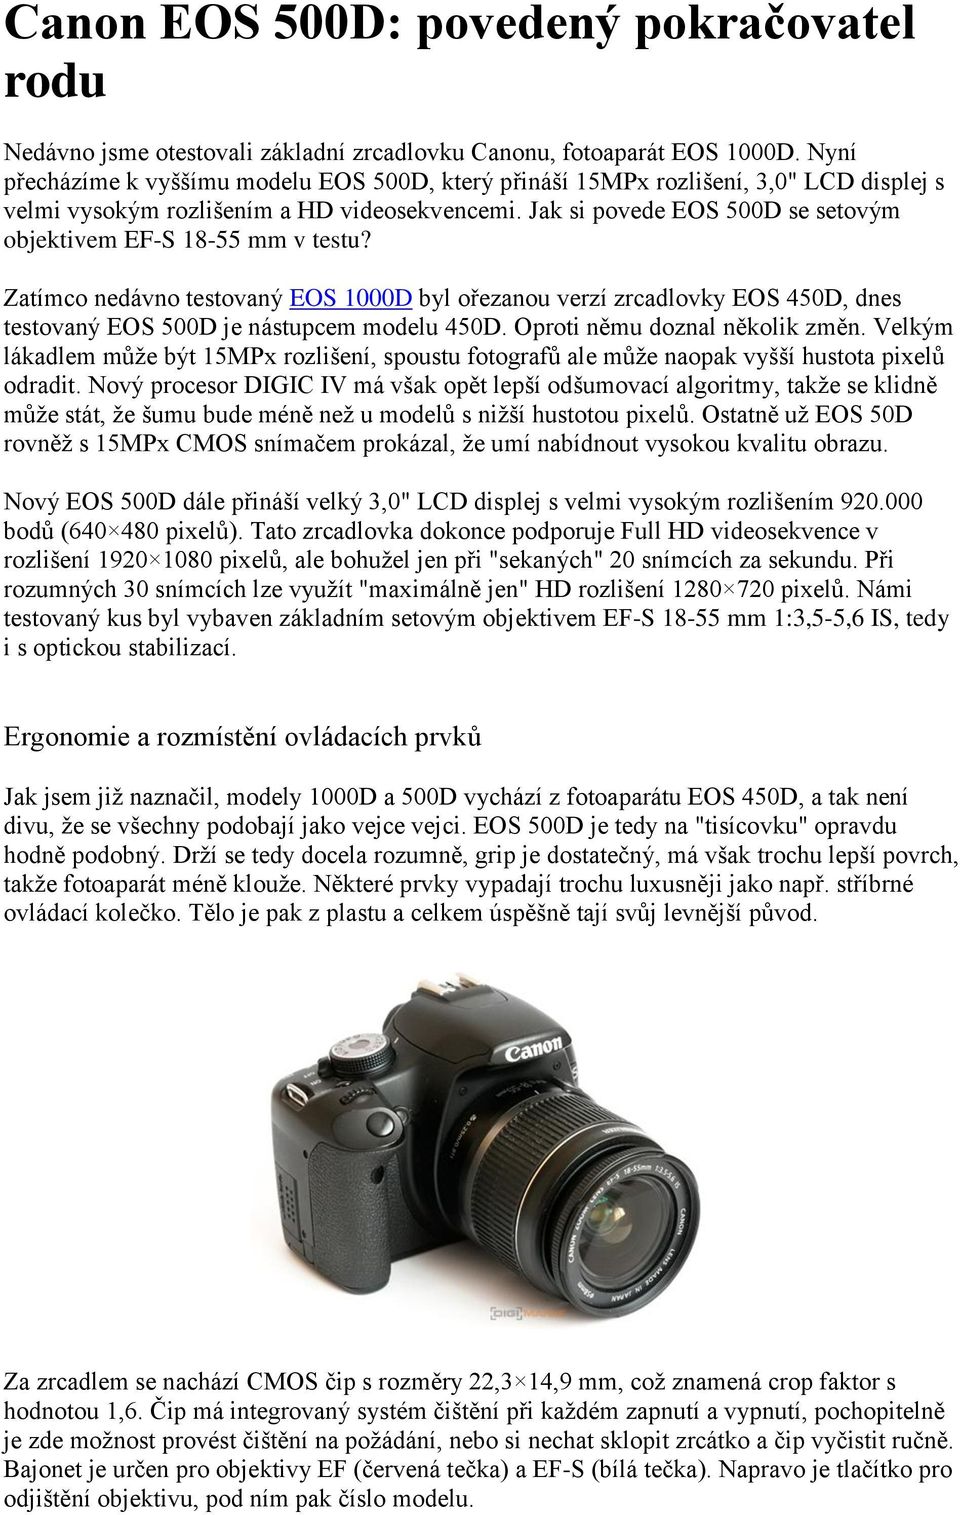 Canon EOS 500D: povedený pokračovatel rodu - PDF Stažení zdarma